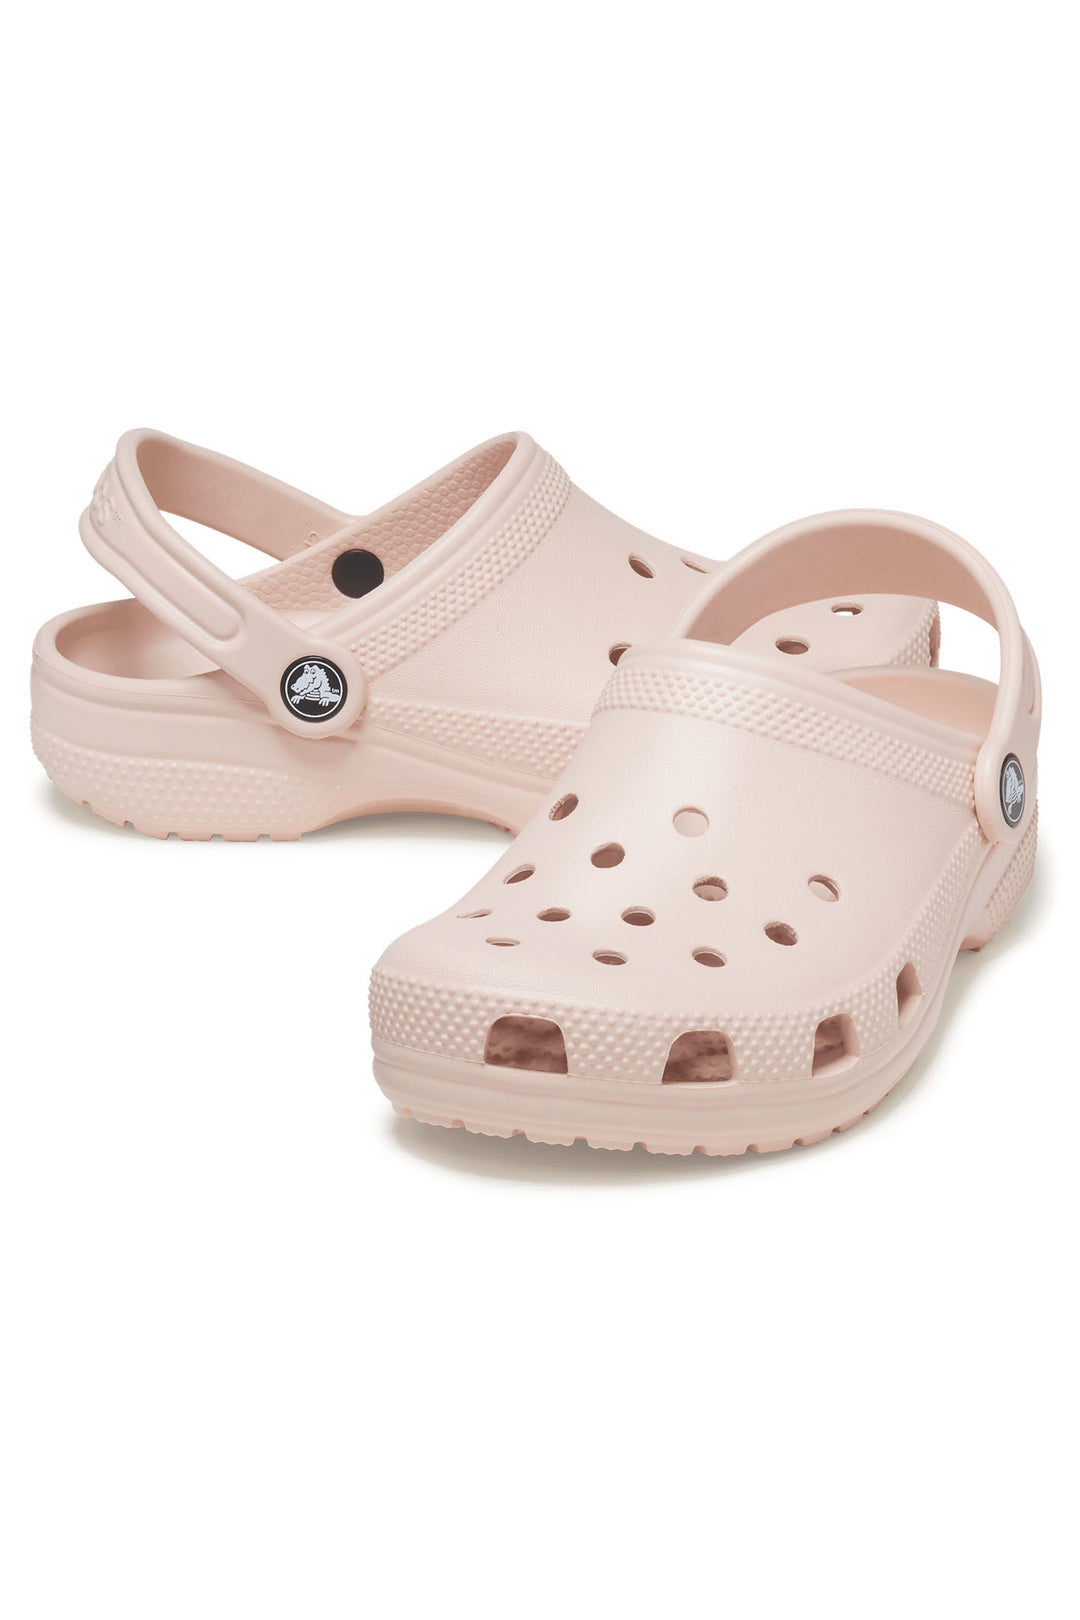 Crocs Classic 10001 Quartz Pink Clog - Shirley Allum Boutique